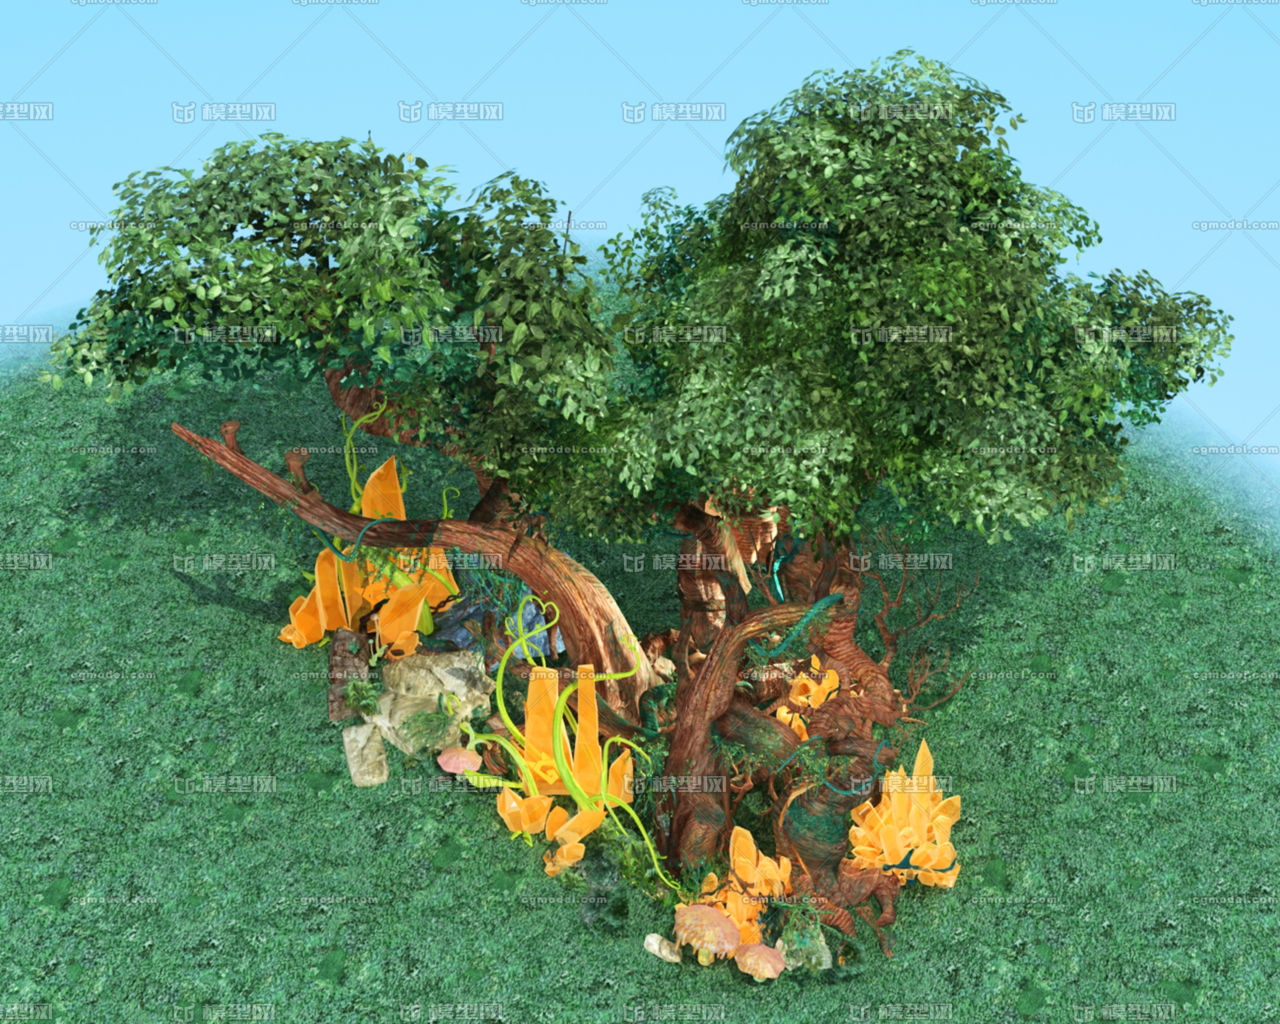 树精 树神 古树妖 世界之树 大树 老树 树怪 景观树模型-自然场景模型库-3ds Max(.max)模型下载-cg模型网